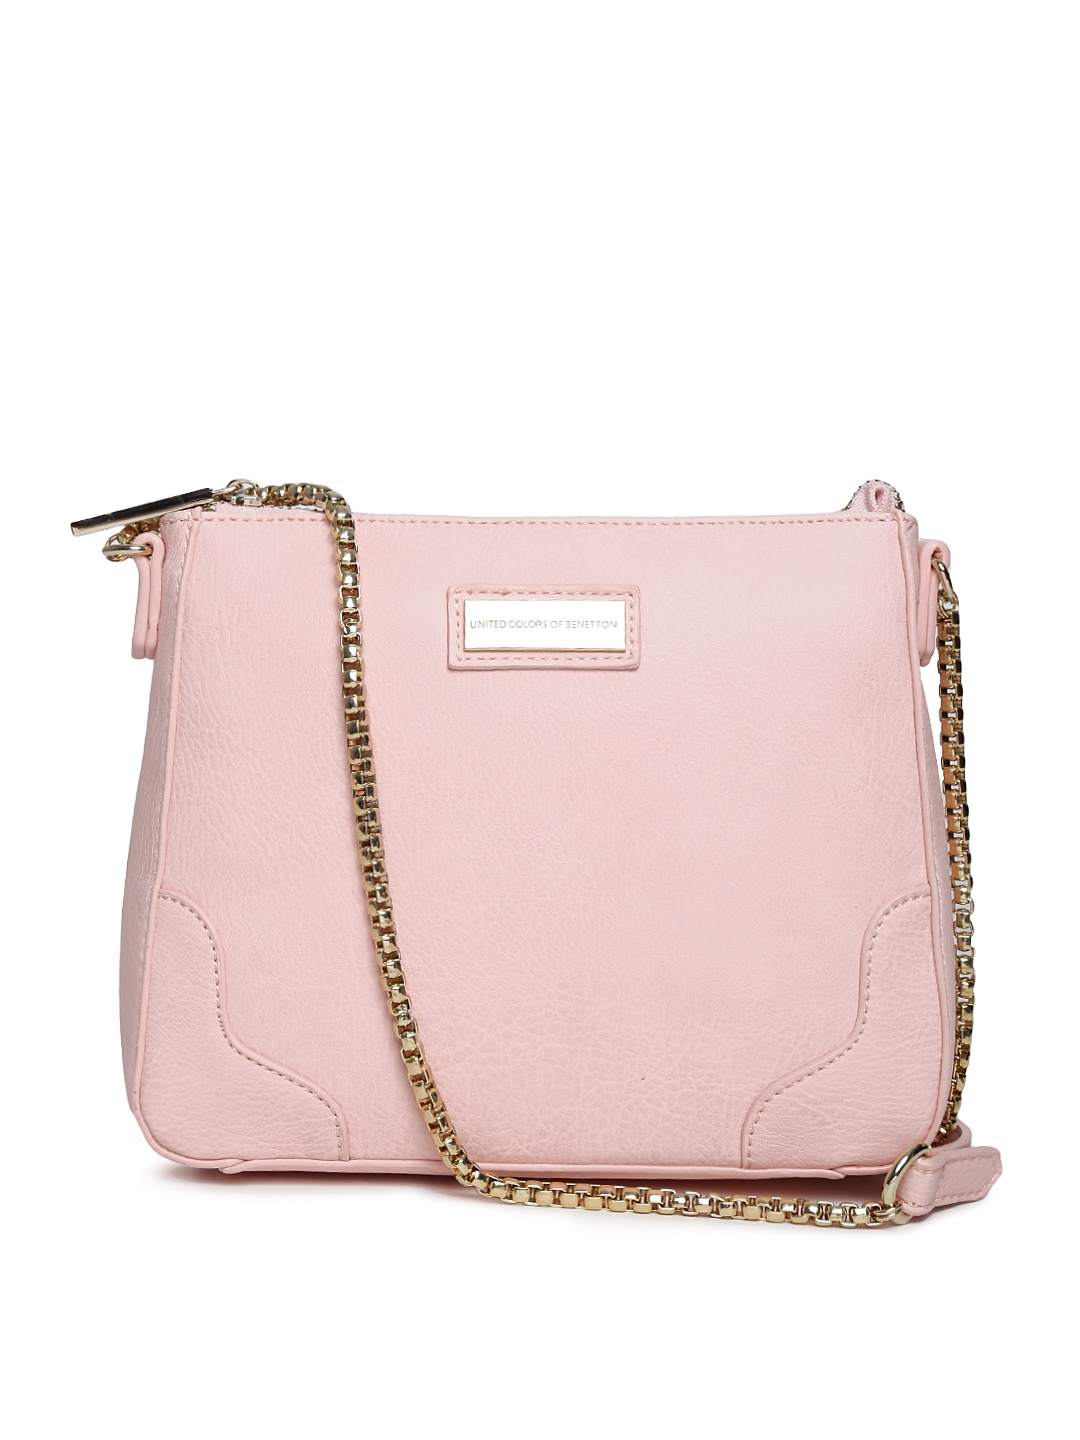 Buy United Colors Of Benetton Light Pink Sling Bag - Handbags for Women ...